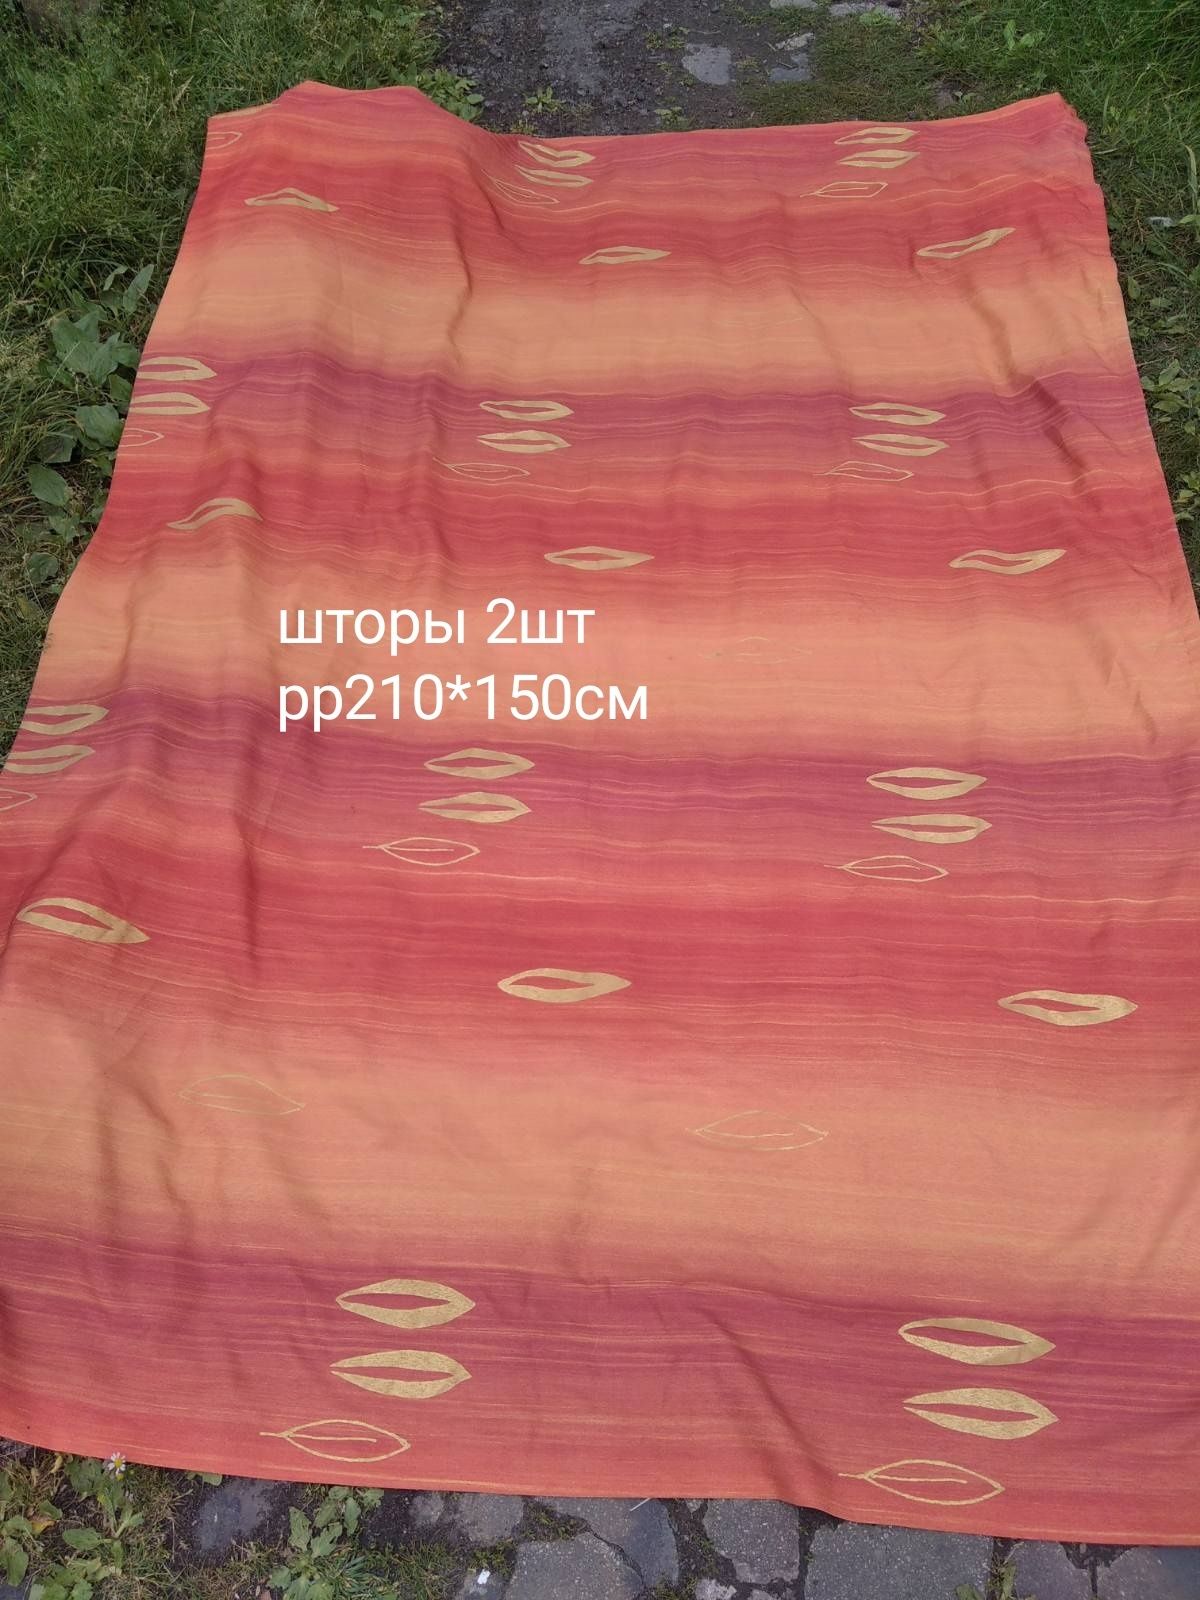 1 лотом постельное бельё покрывало штора полотенце тюль